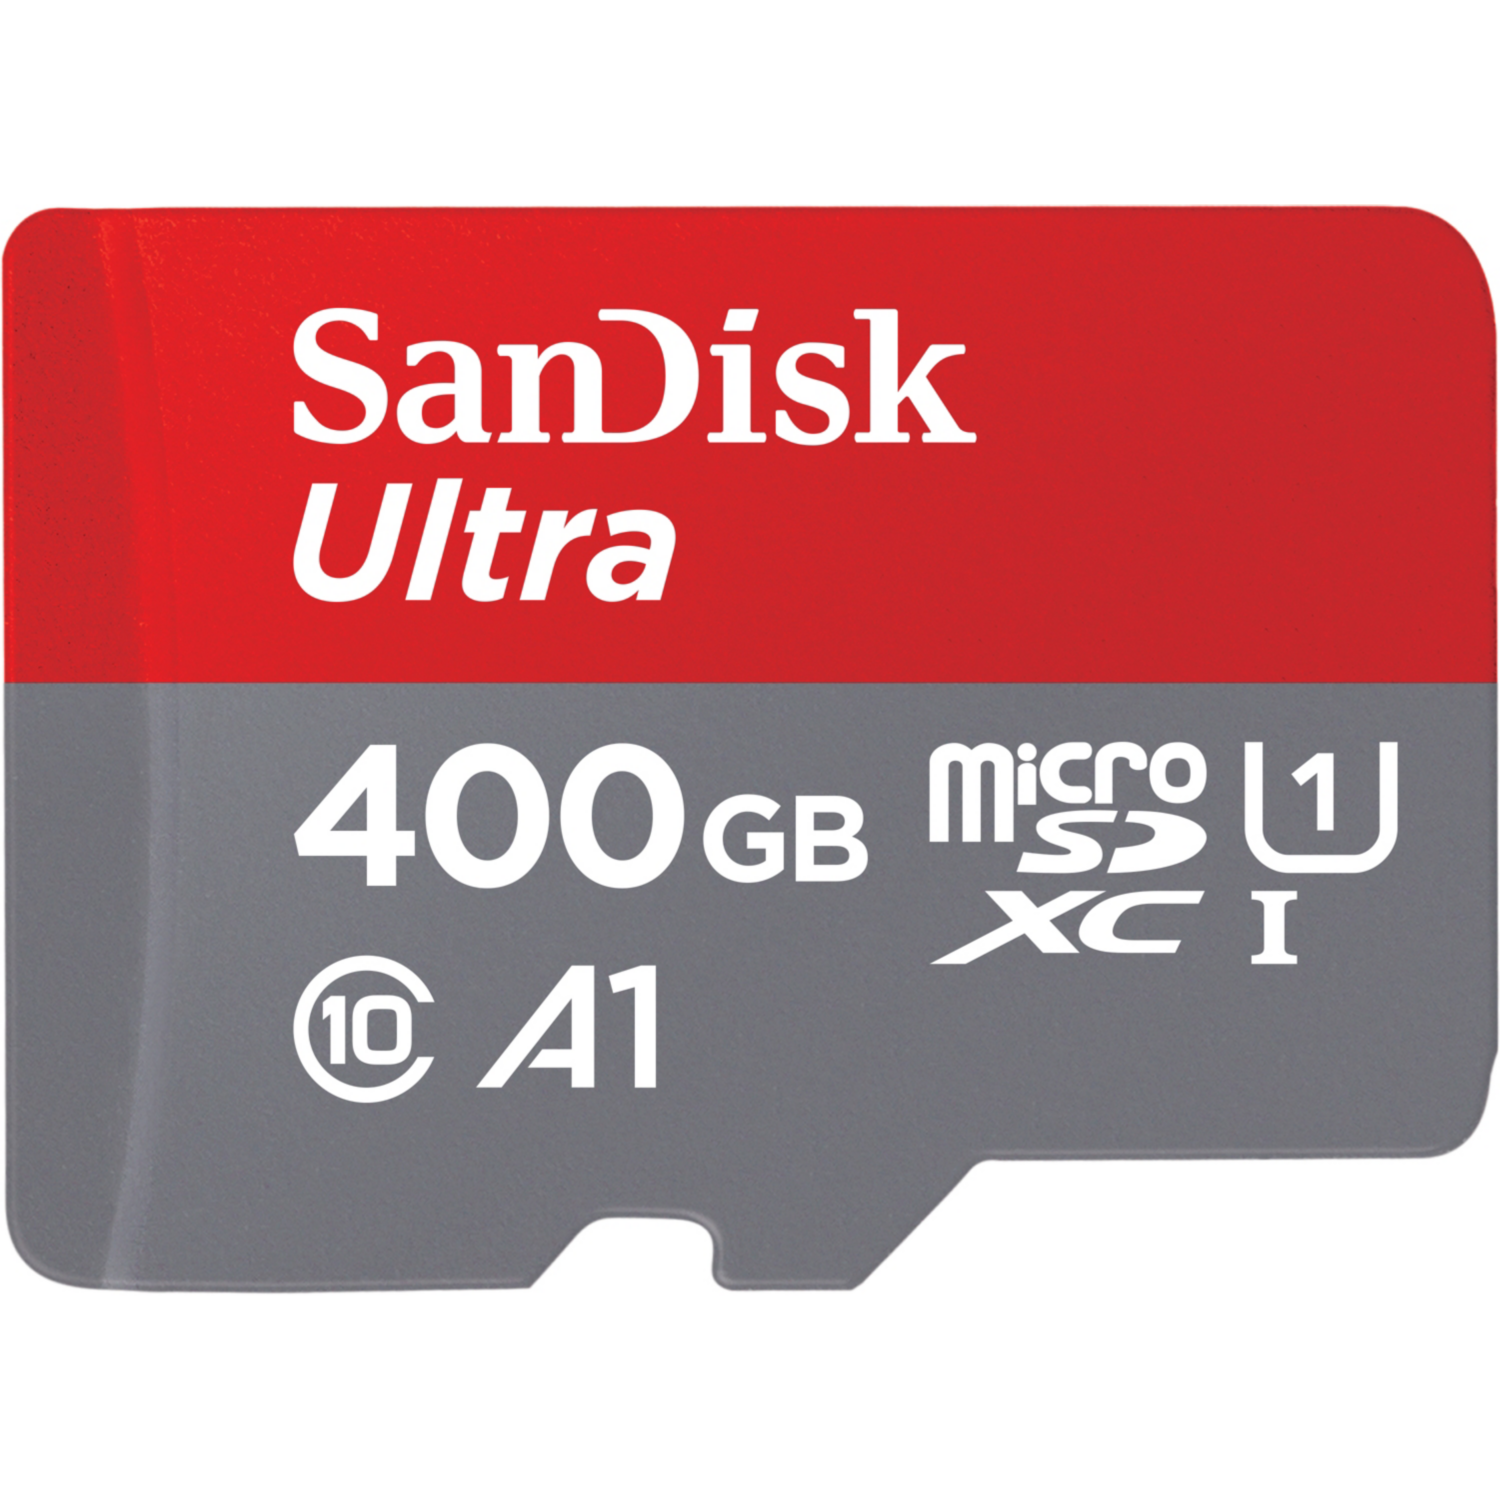 SanDisk Ultra 400 GB microSDXC Speicherkarte Kit